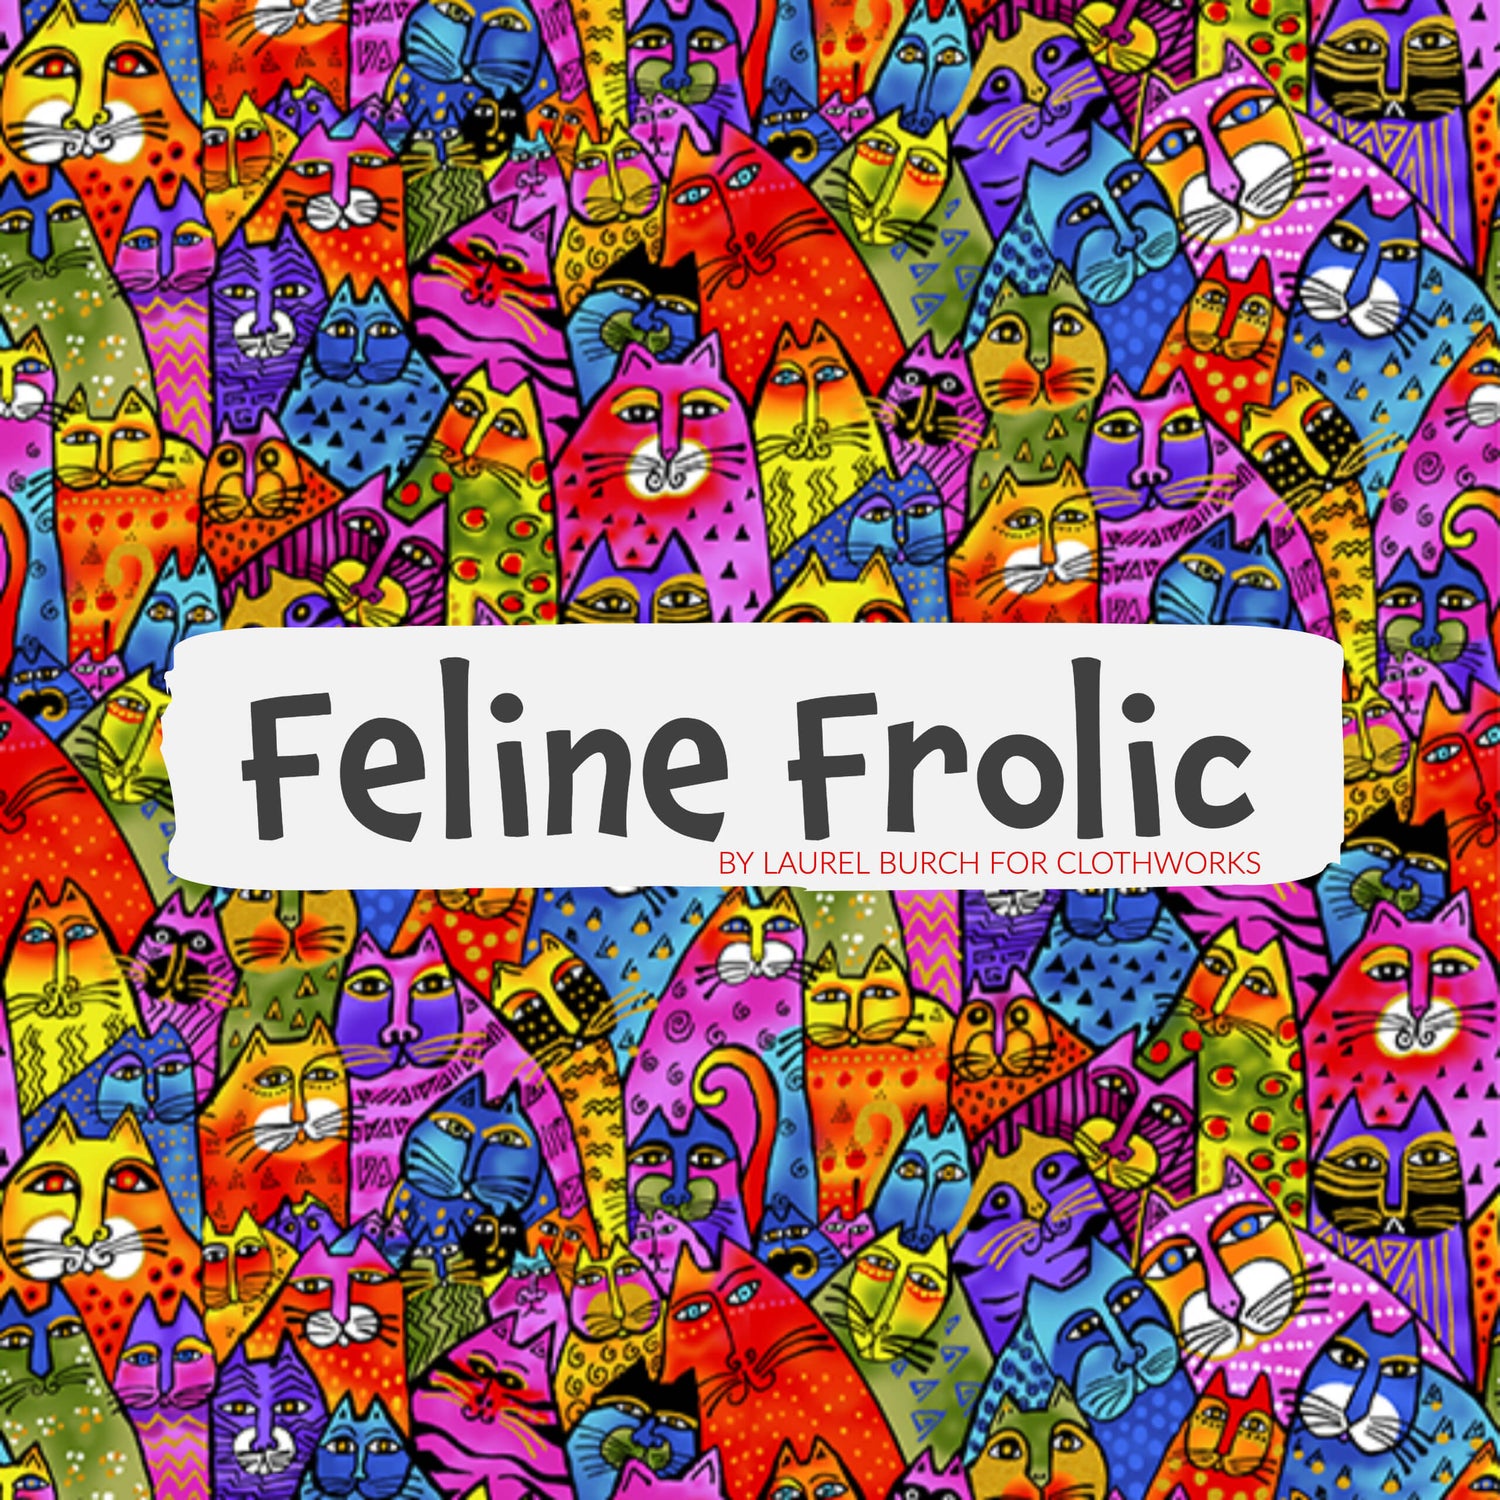 Feline Frolic